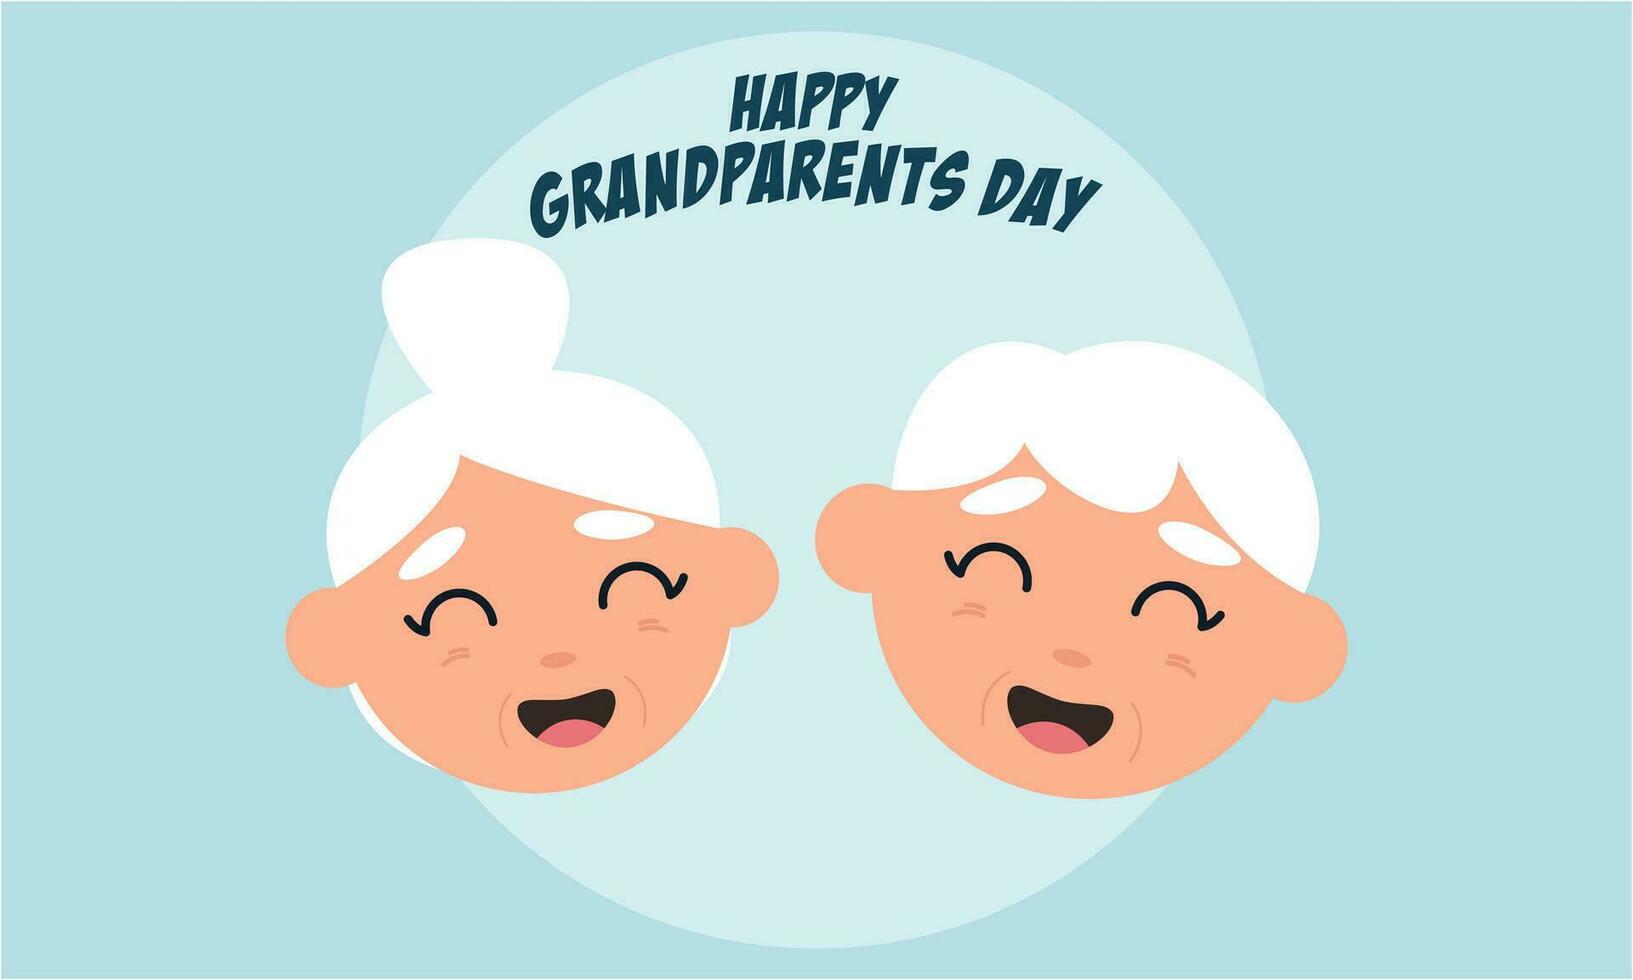 felice festa dei nonni, illustrazione di sfondo per anziani vettore